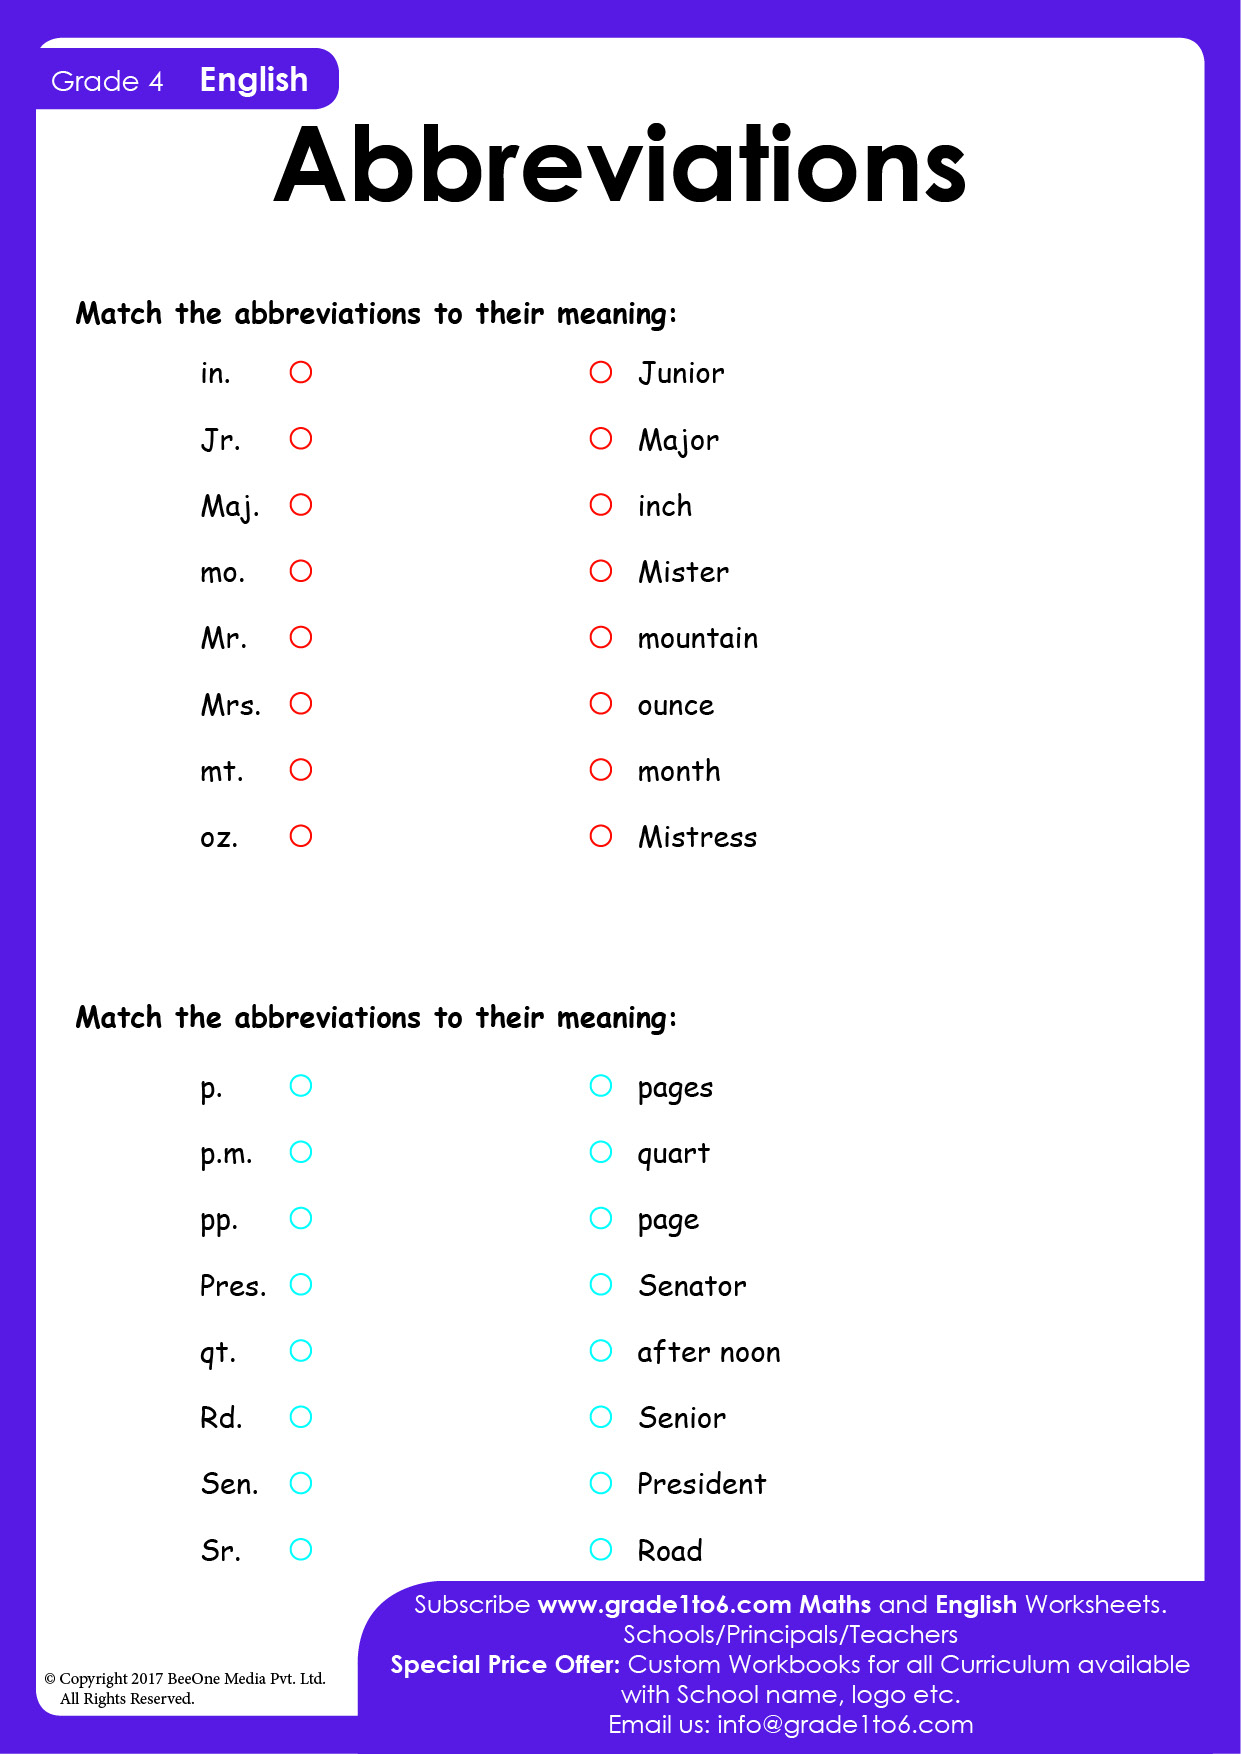 abbreviations-worksheets-grade1to6